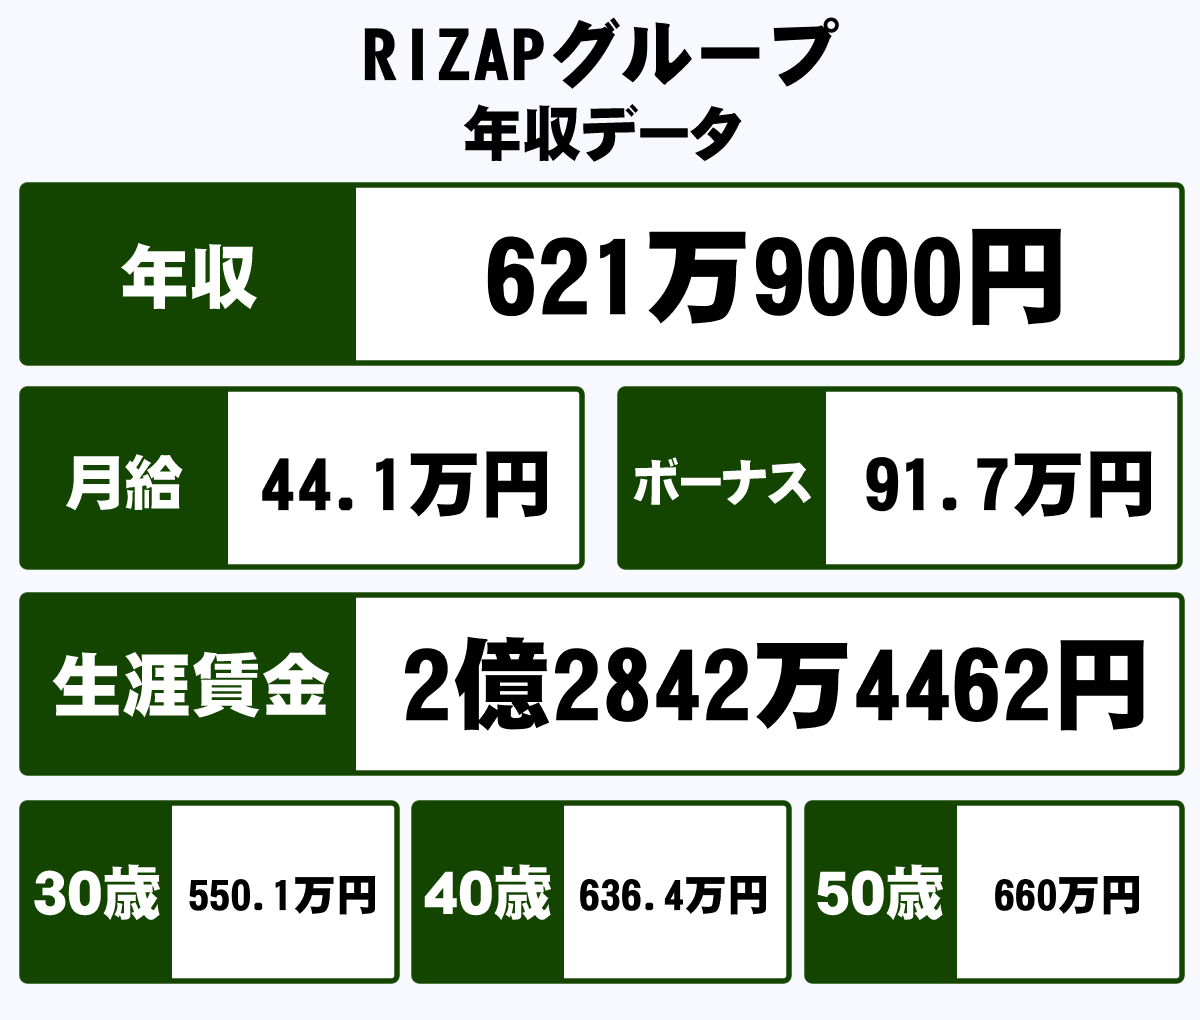 Rizapグループ株式会社の年収や生涯賃金など収入の全てがわかるページ 年収ガイド